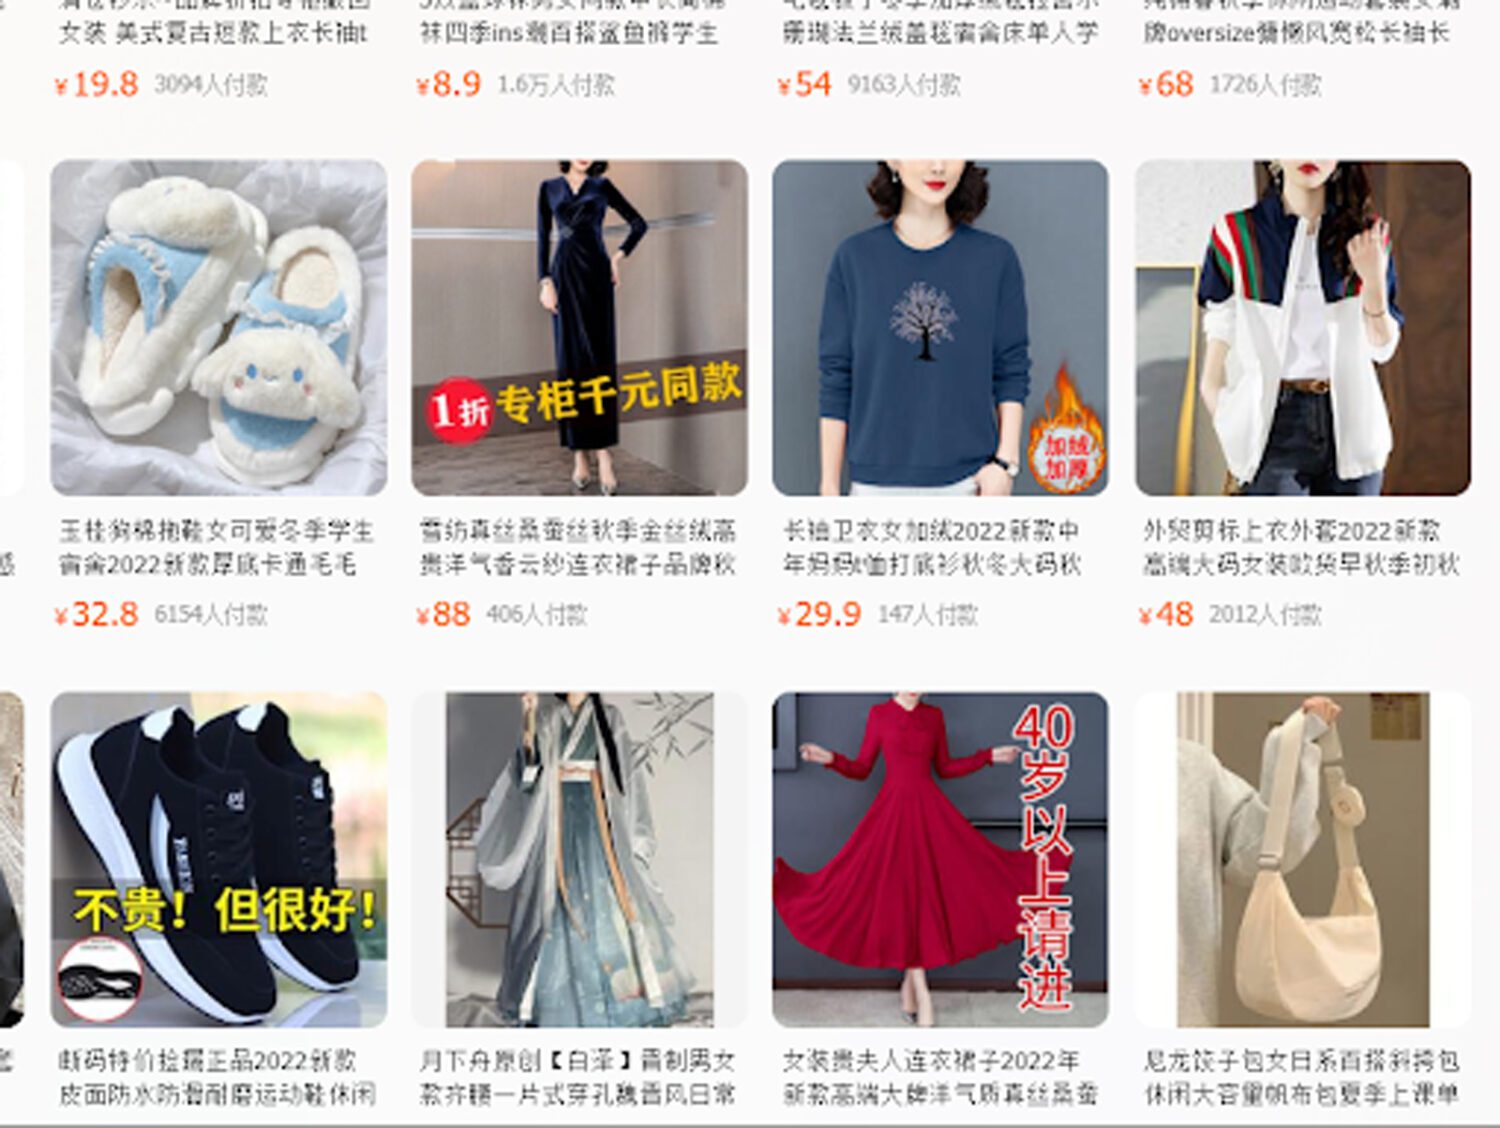 Tìm hiểu lợi ích của việc tìm kiếm bằng hình ảnh trên taobao